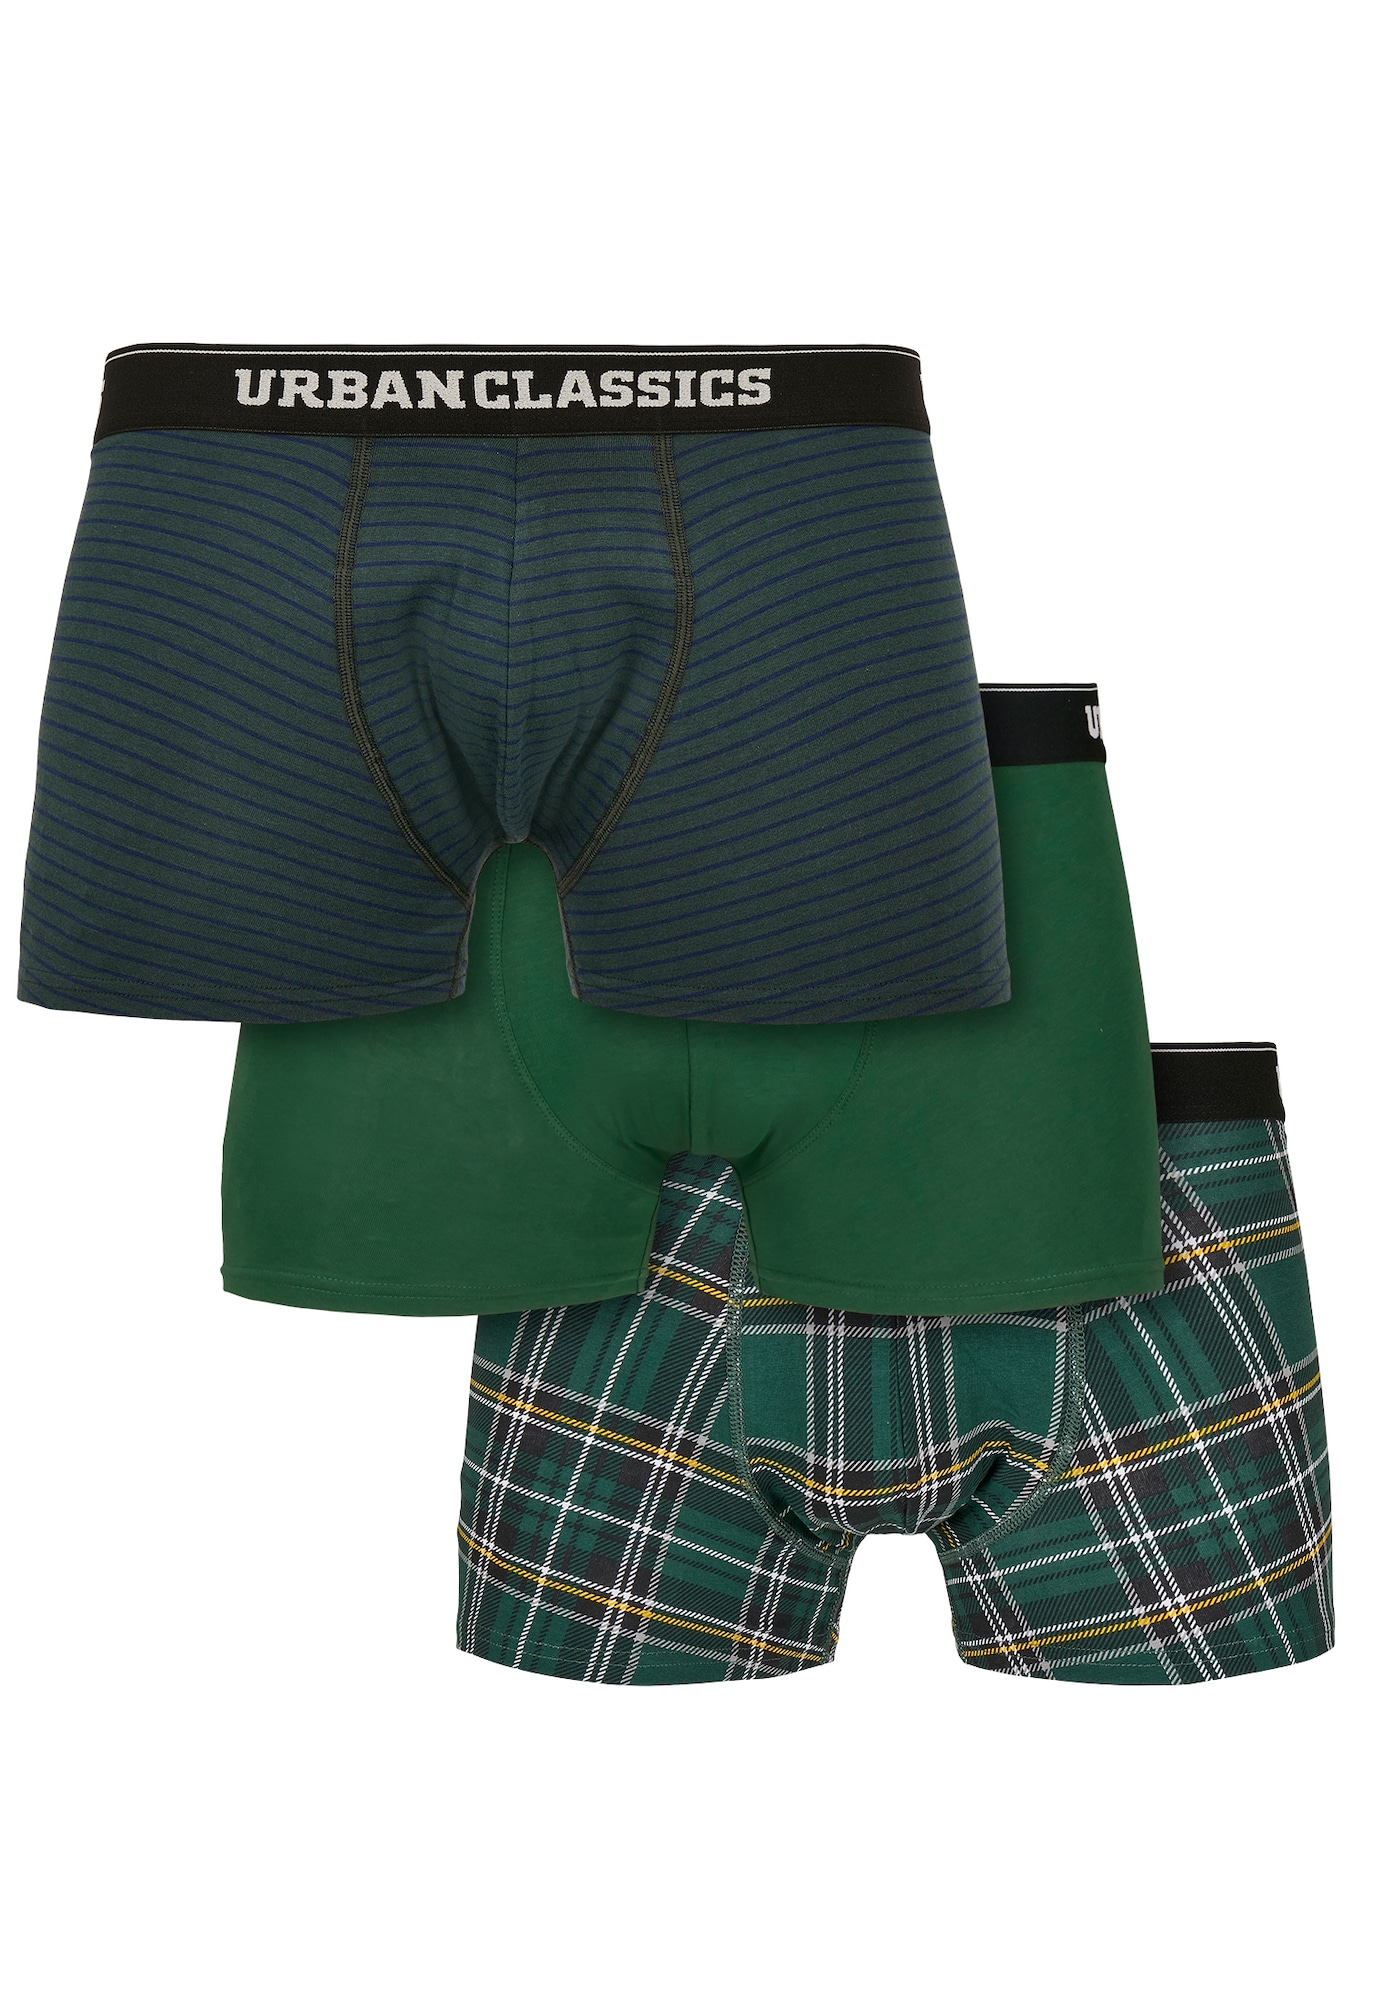 Urban Classics Boxer trumpikės juoda / tamsiai žalia / balta / šviesiai pilka / geltona